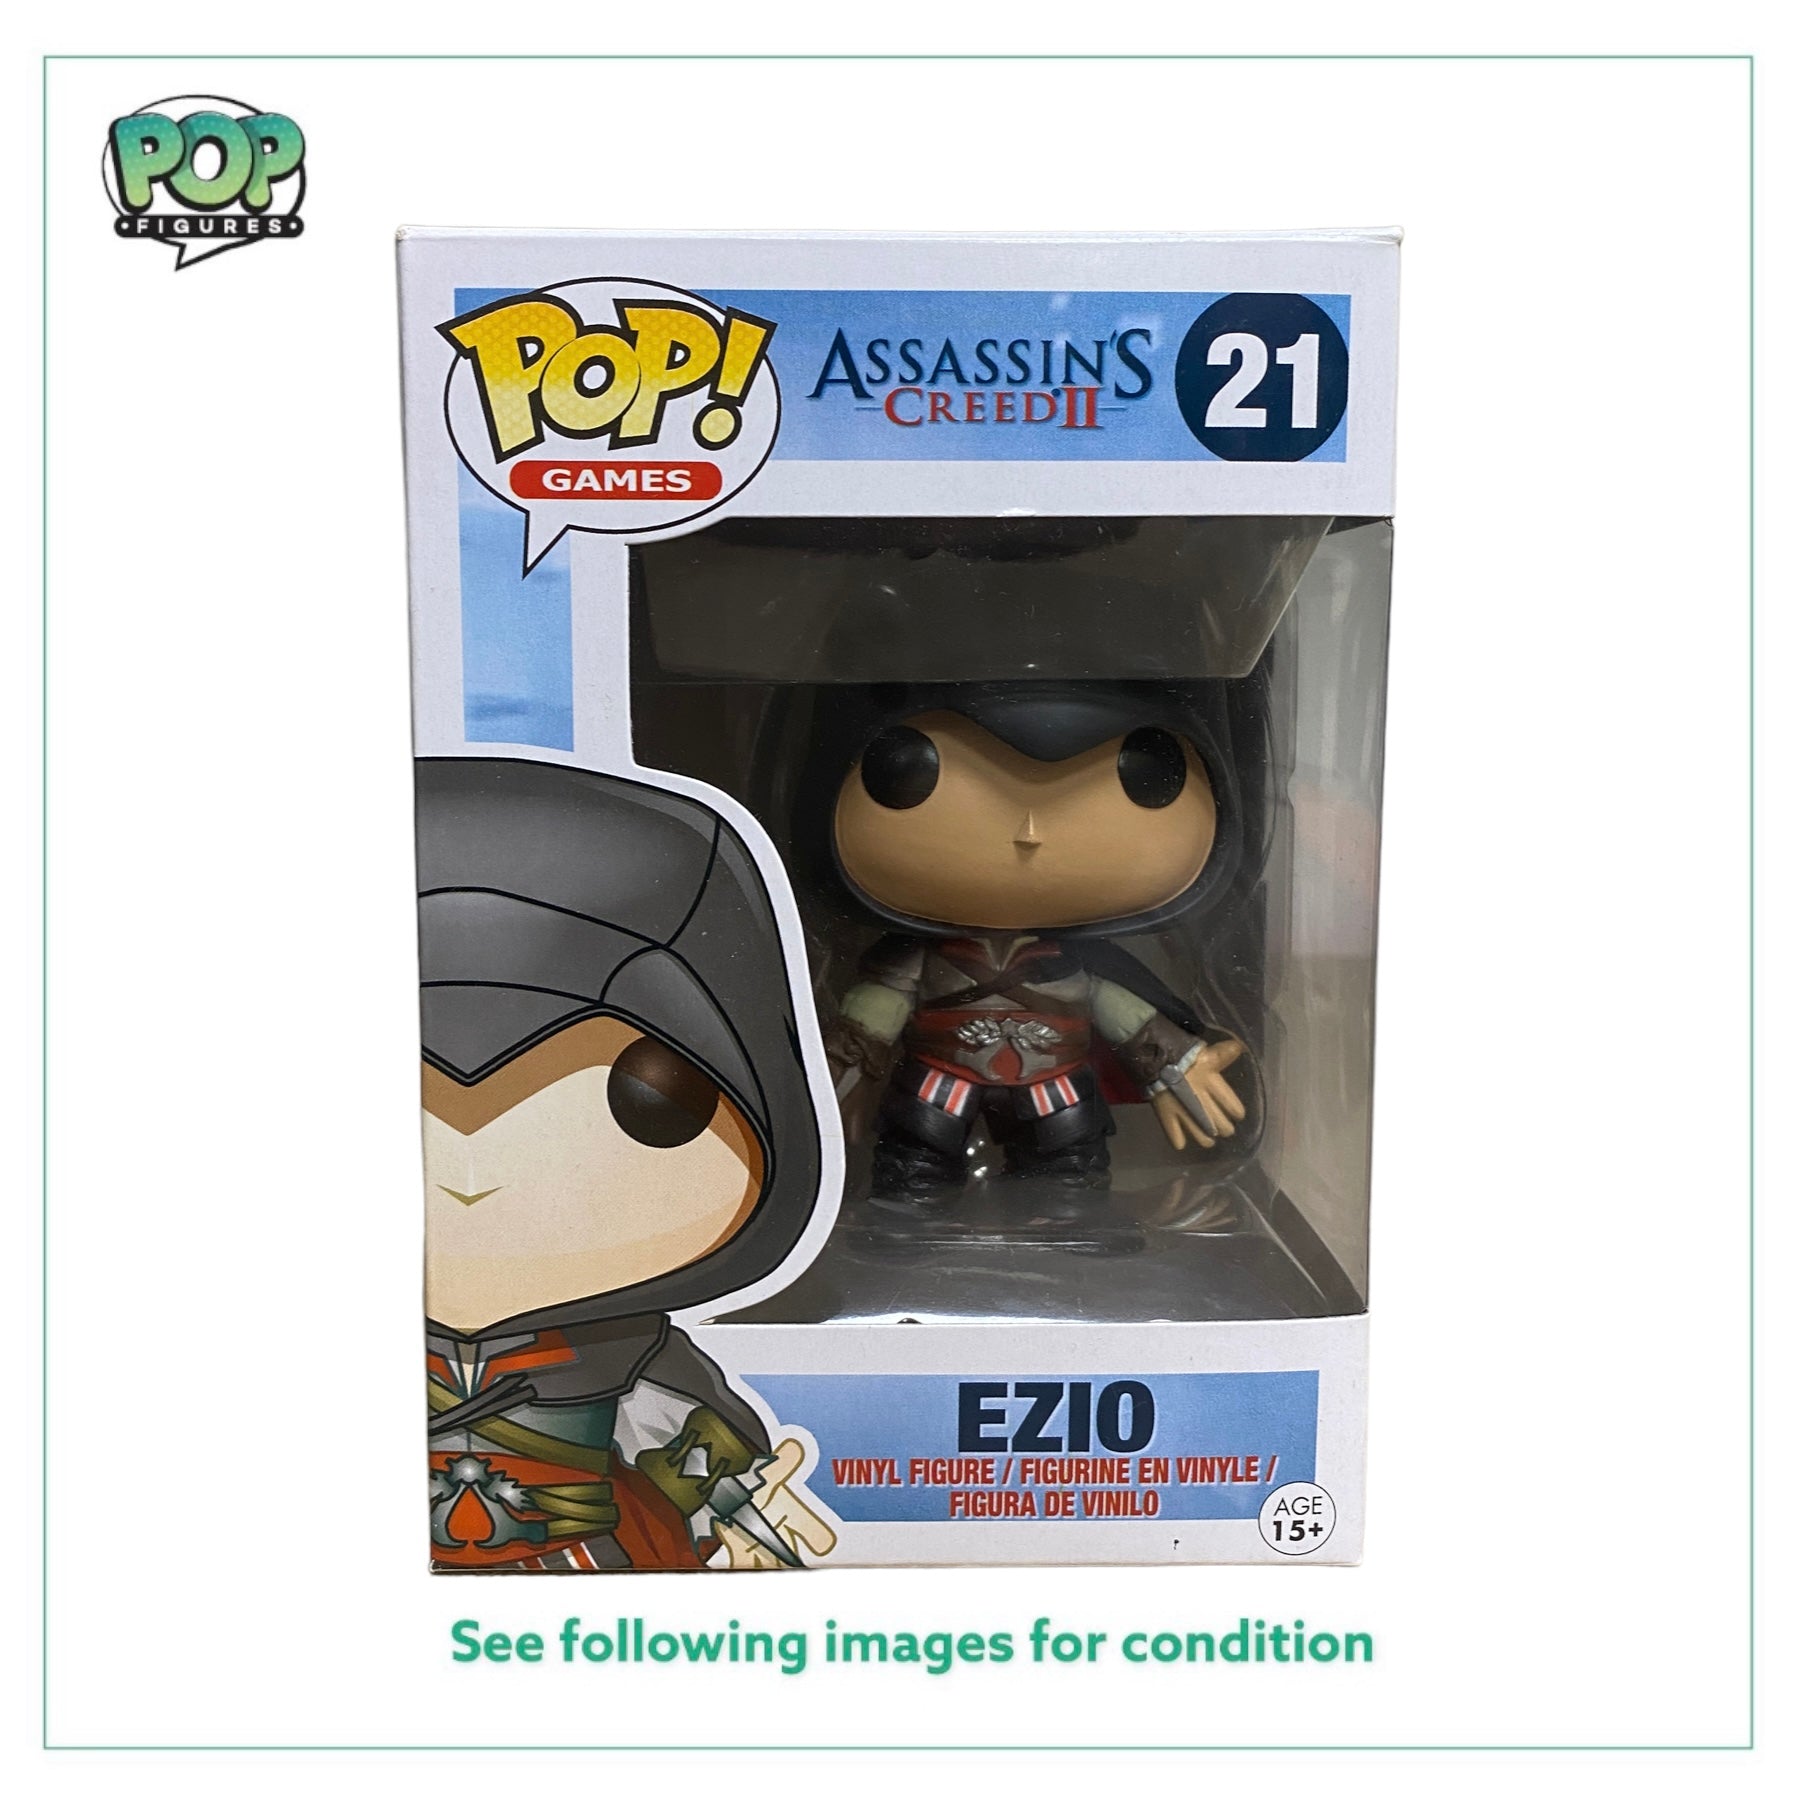 Ezio #21 (Black) Funko Pop! - Assassin's Creed II - 2013 Pop! - Condition 8.5/10